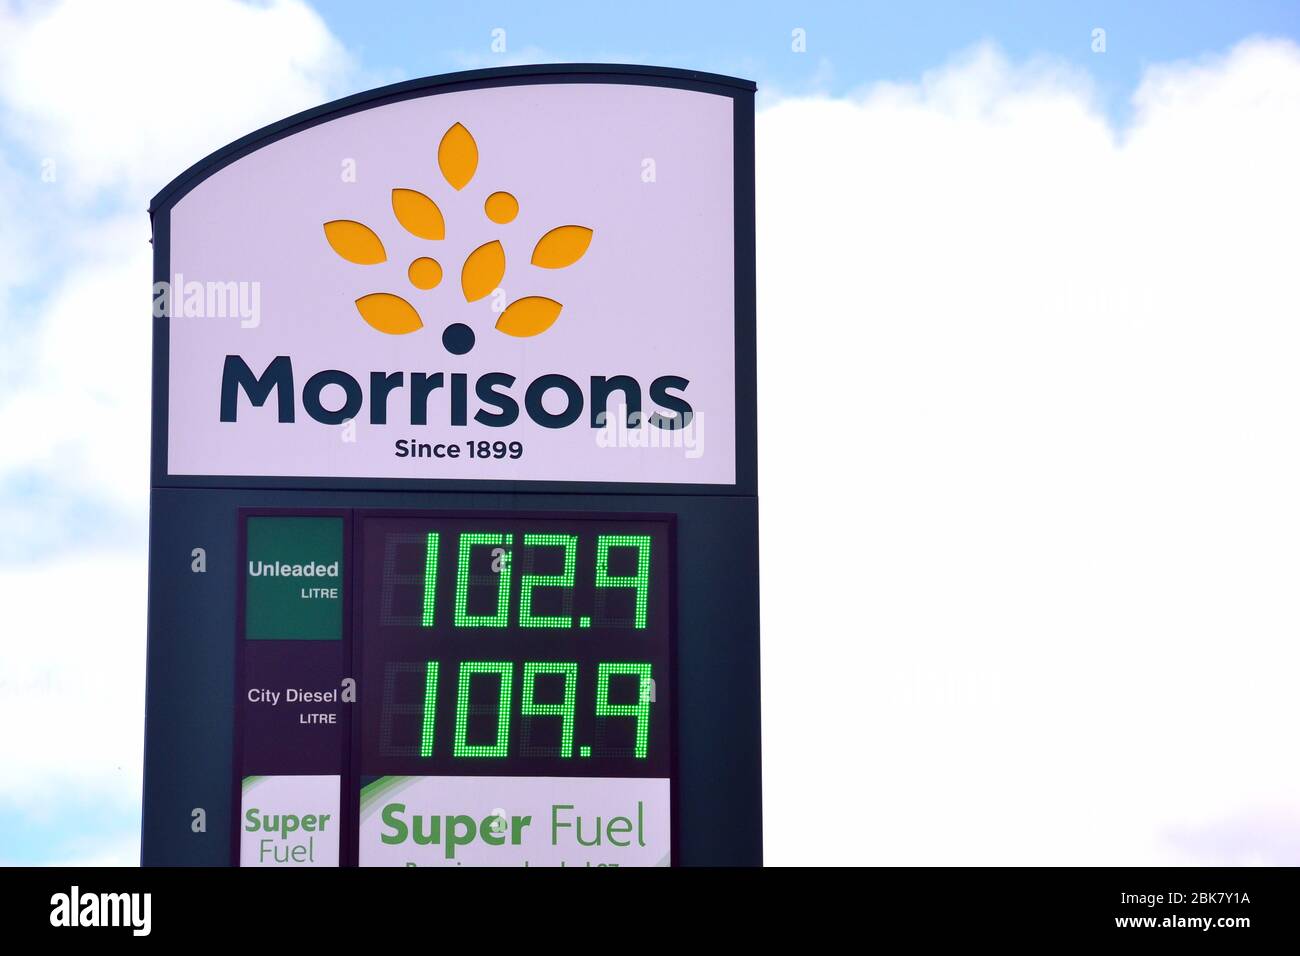 Preisschild für die Morrisons Tankstelle in Manchester, England, Großbritannien, zeigt bleifrei bei 102.9 Pence pro Liter. Die Ölpreise fielen im Frühjahr 2020. Stockfoto